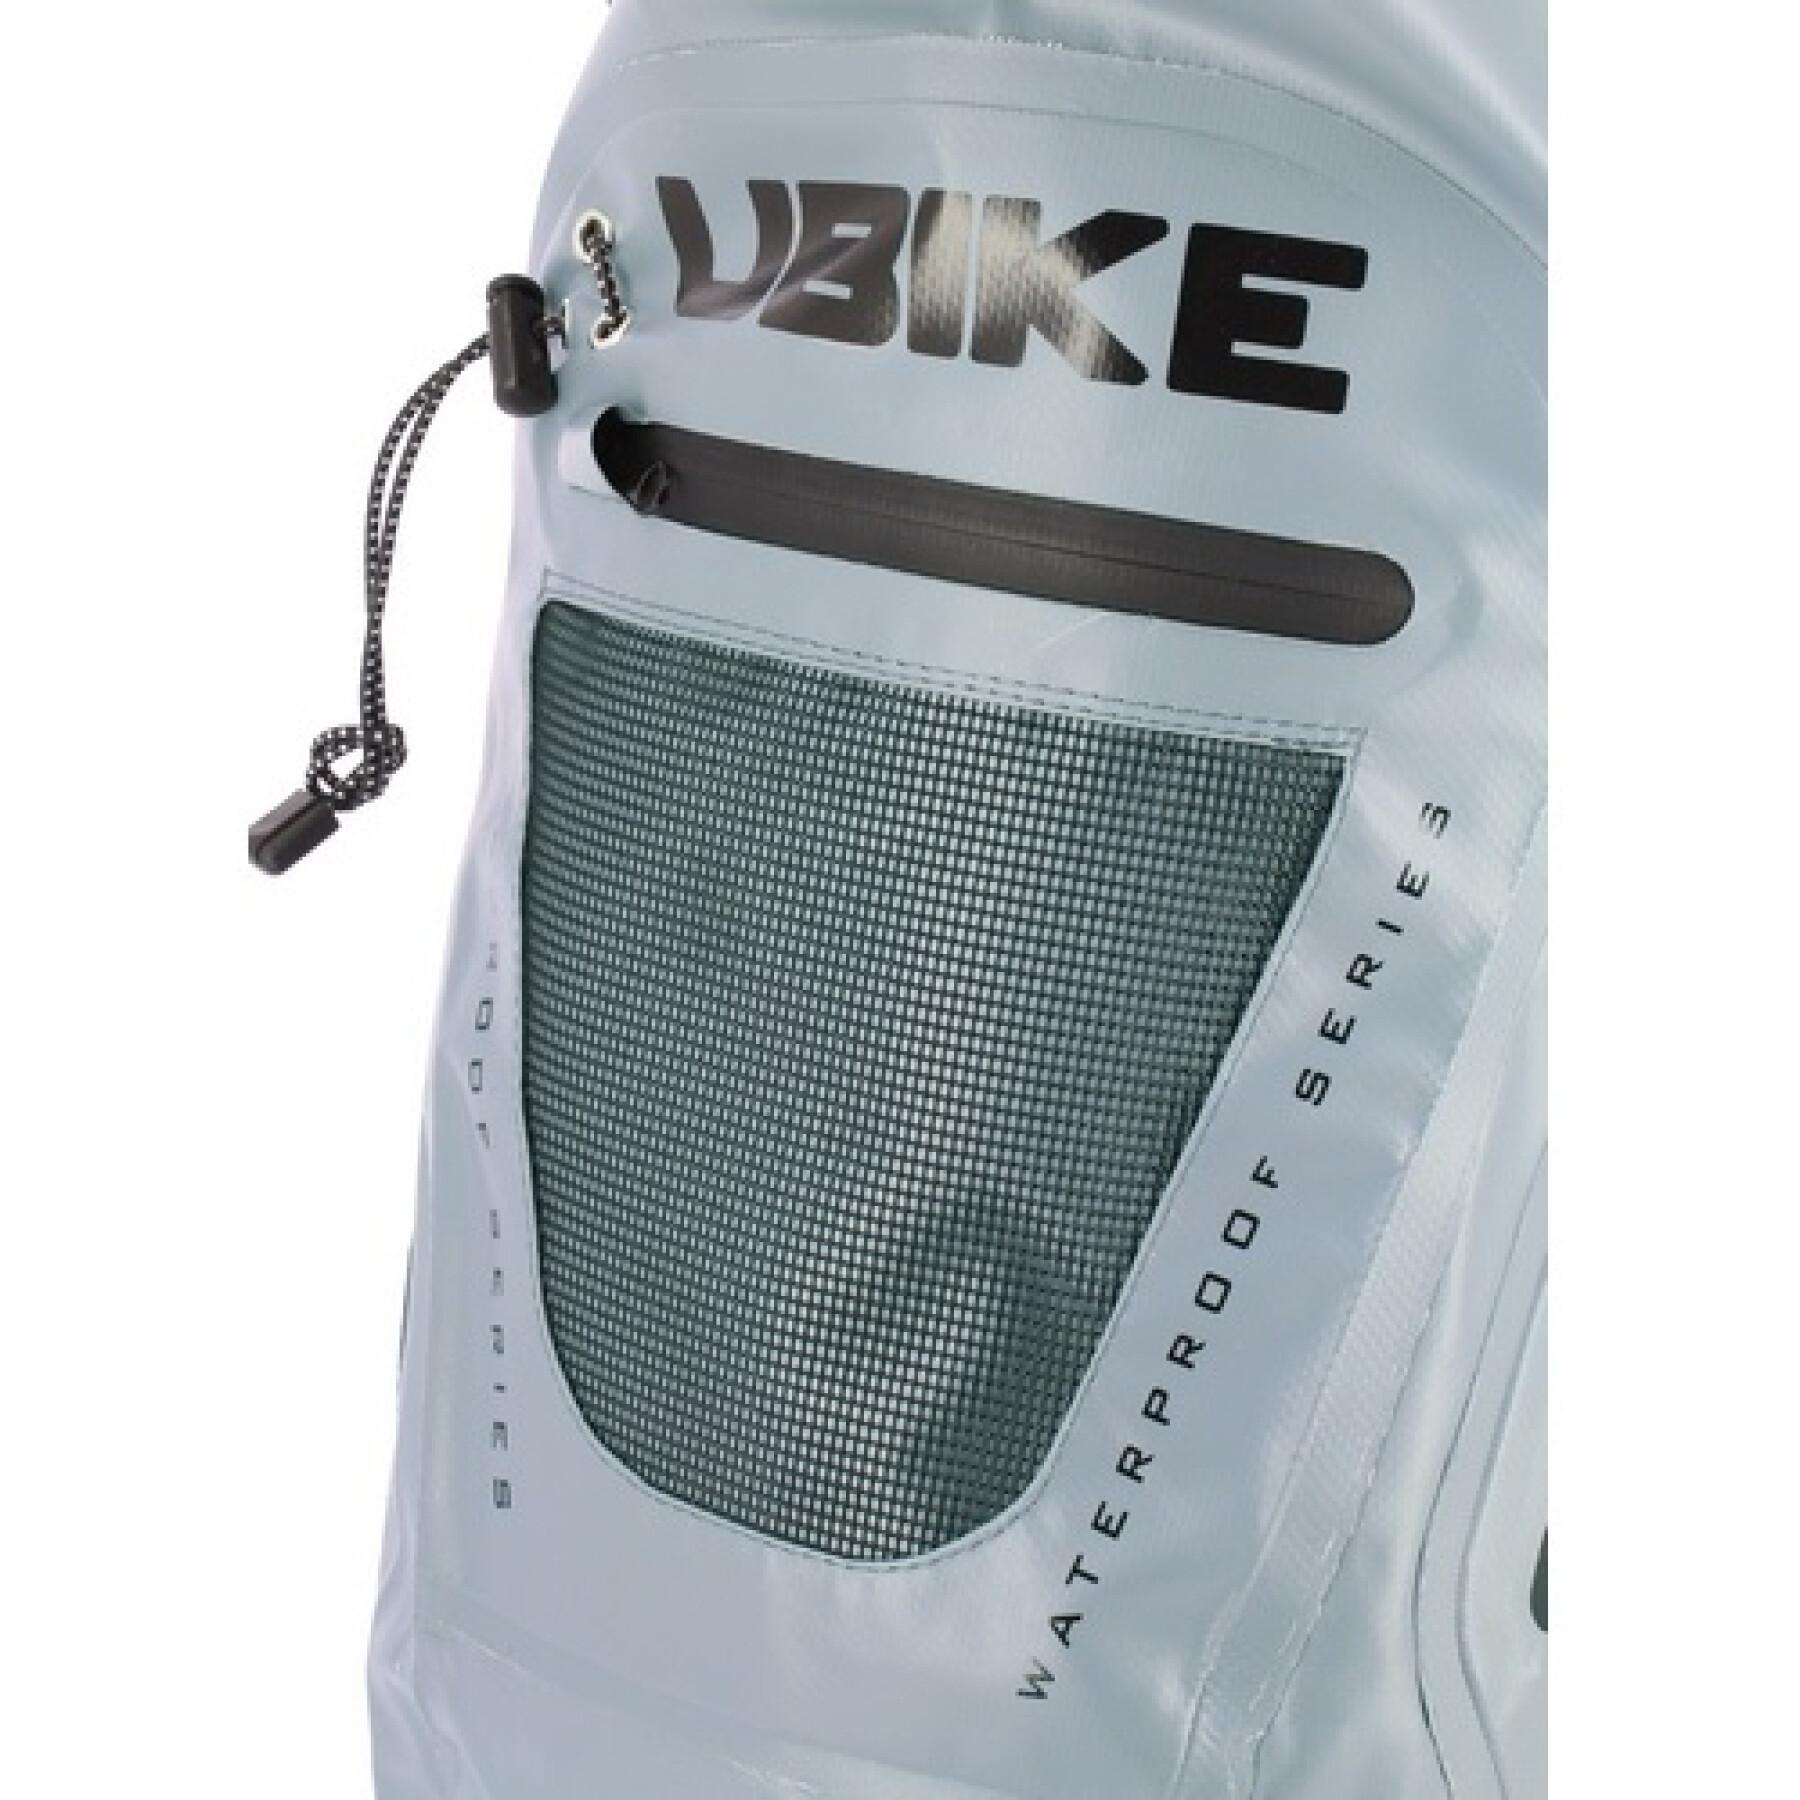 Vattentät ryggsäck Ubike Easy Pack + 20L Nardo